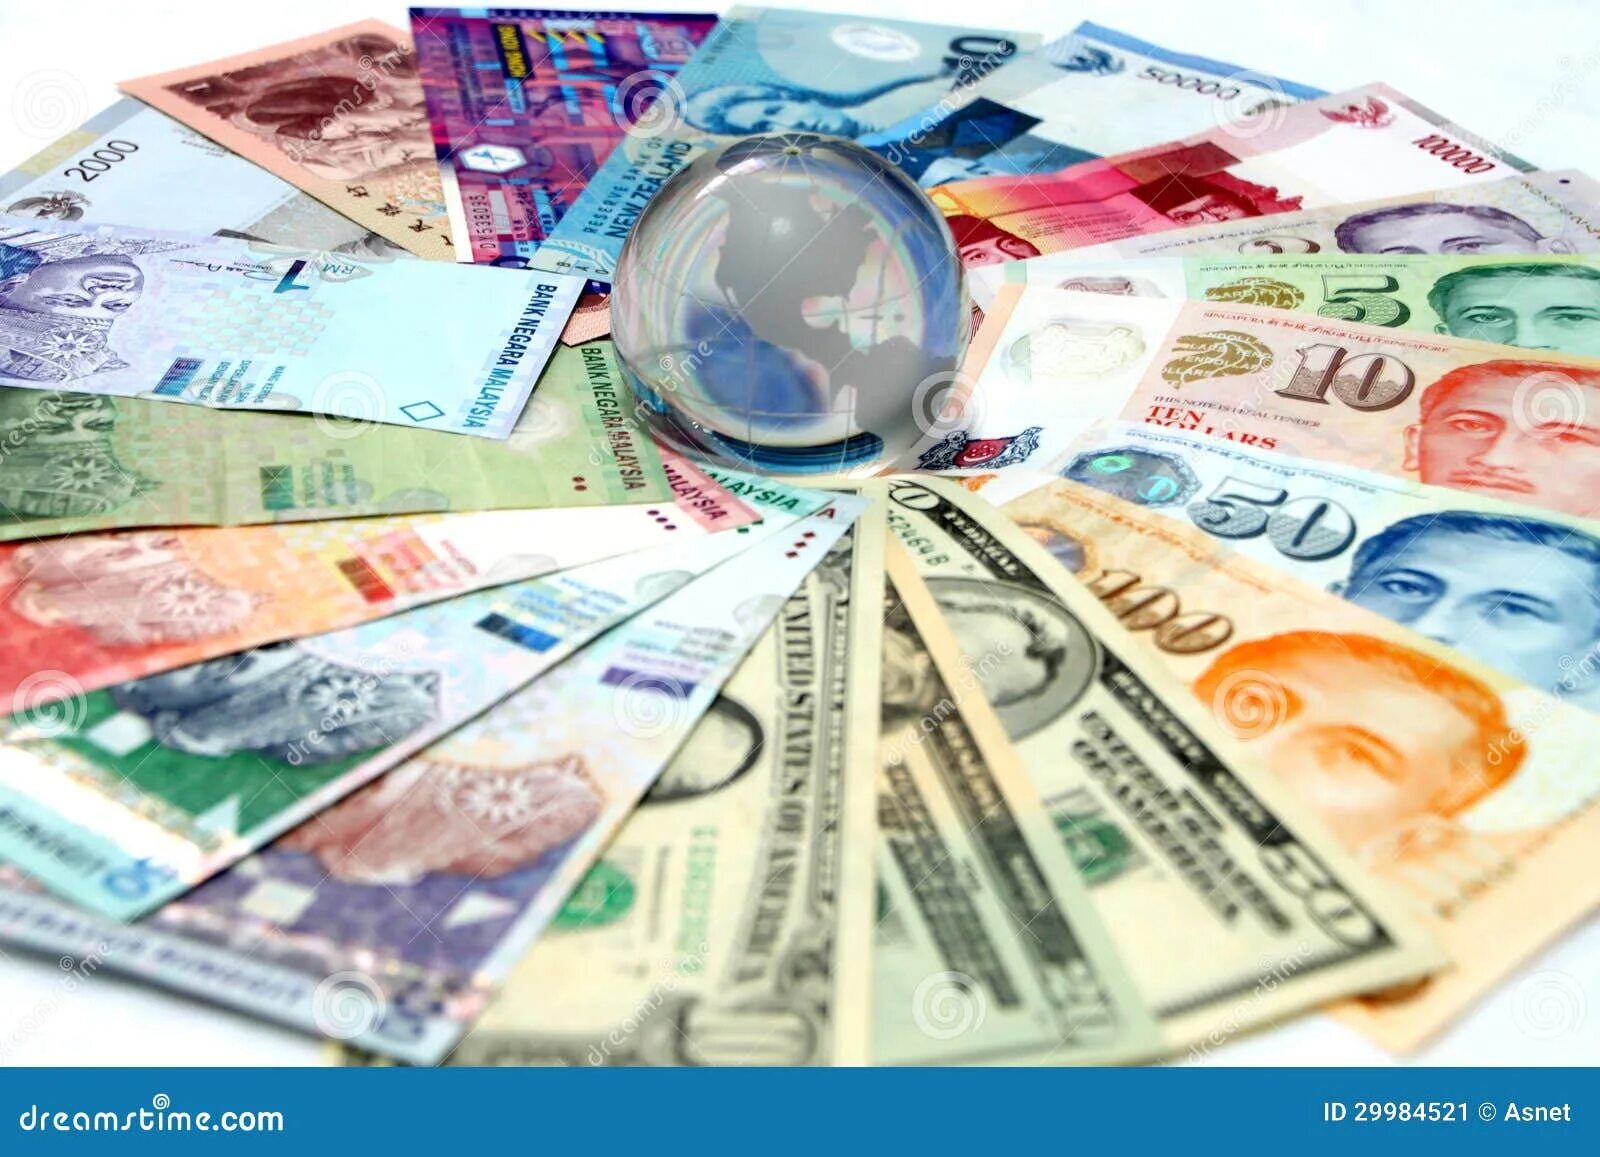 Рынок для покупки иностранной валюты. Конвертируемость валюты. Конвертация валют фото. Национальная и Иностранная валюта.